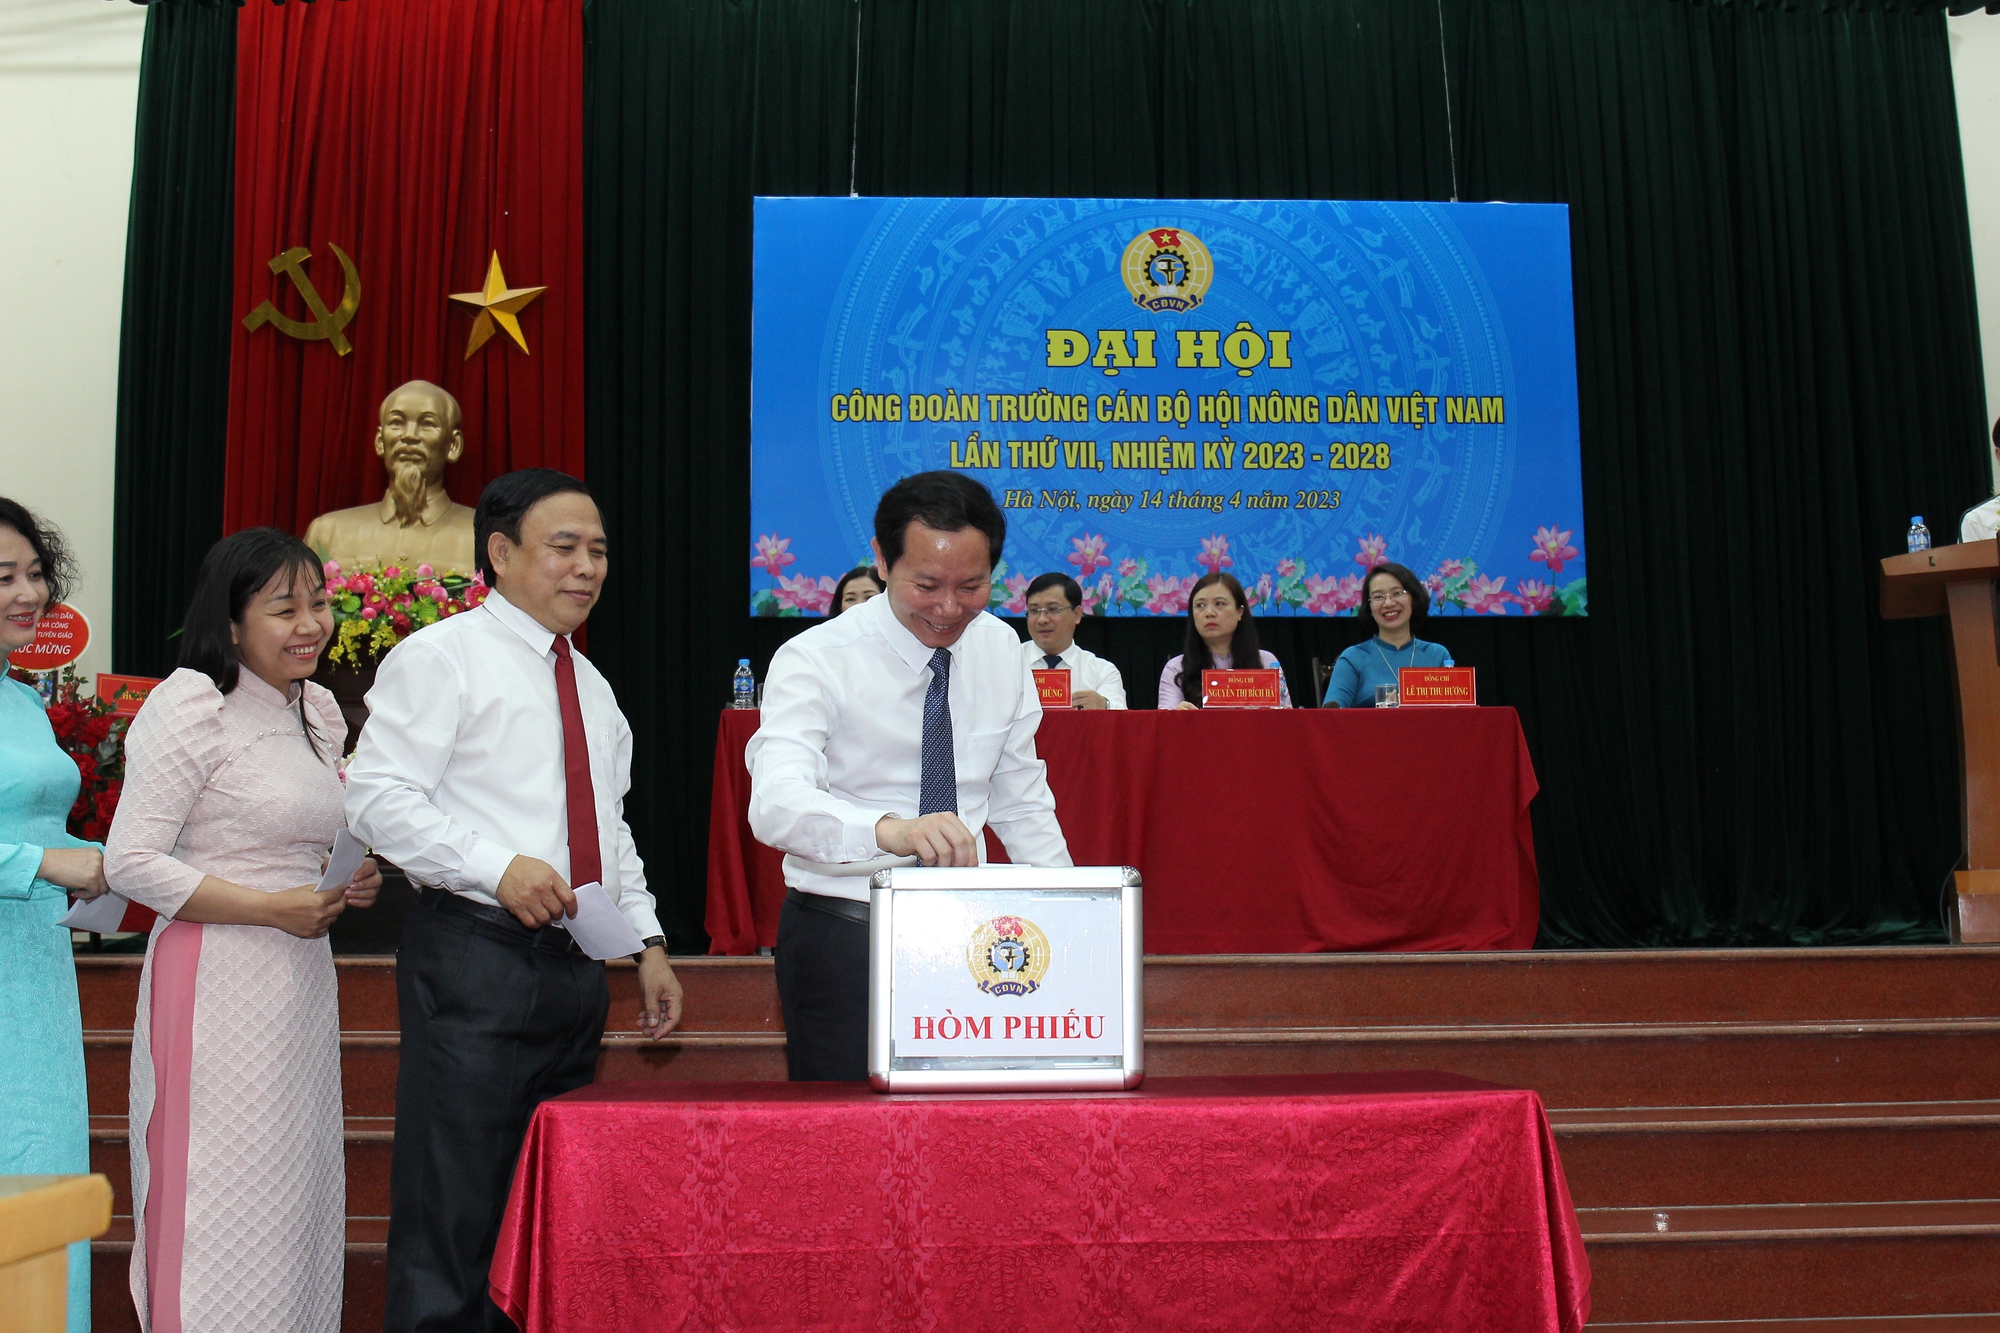 Công đoàn Trường cán bộ Hội Nông dân Việt Nam tổ chức thành công Đại hội khóa VII, nhiệm kỳ 2018-2023 - Ảnh 2.